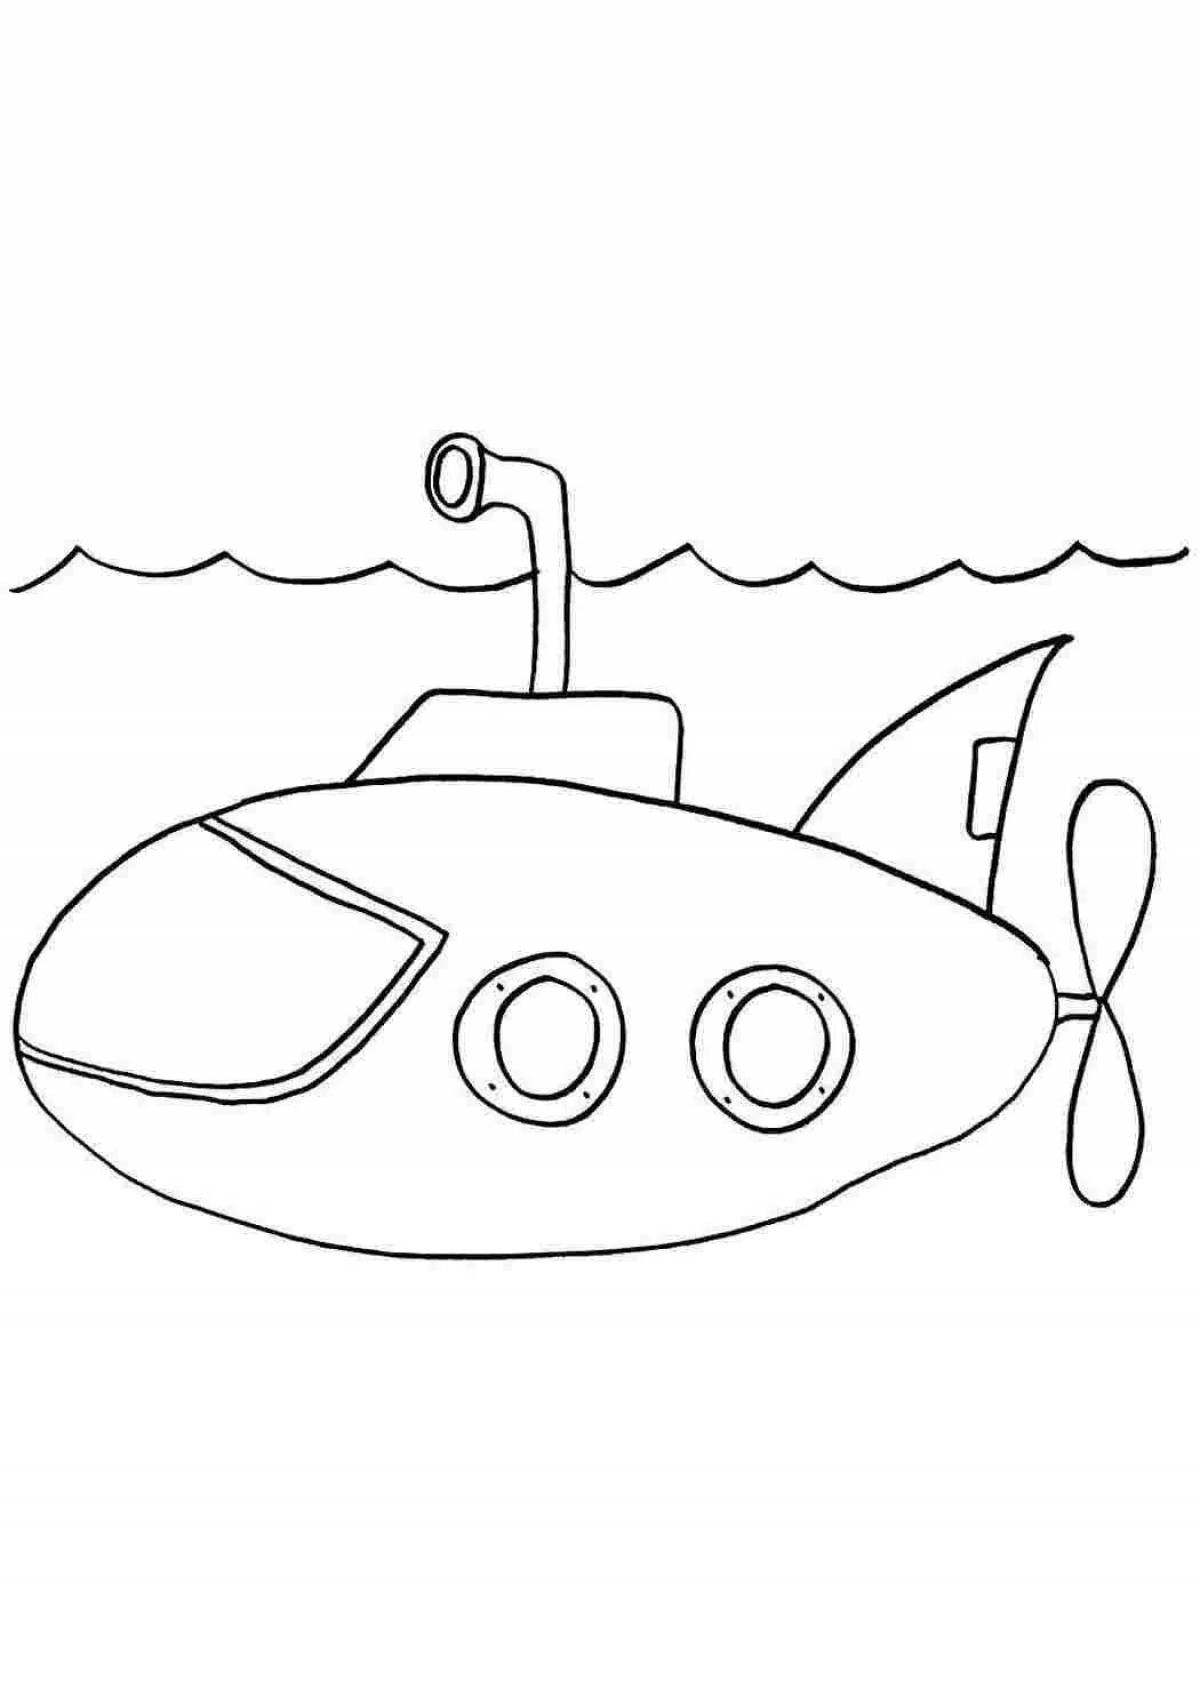 Замечательная раскраска подводной лодки для детей